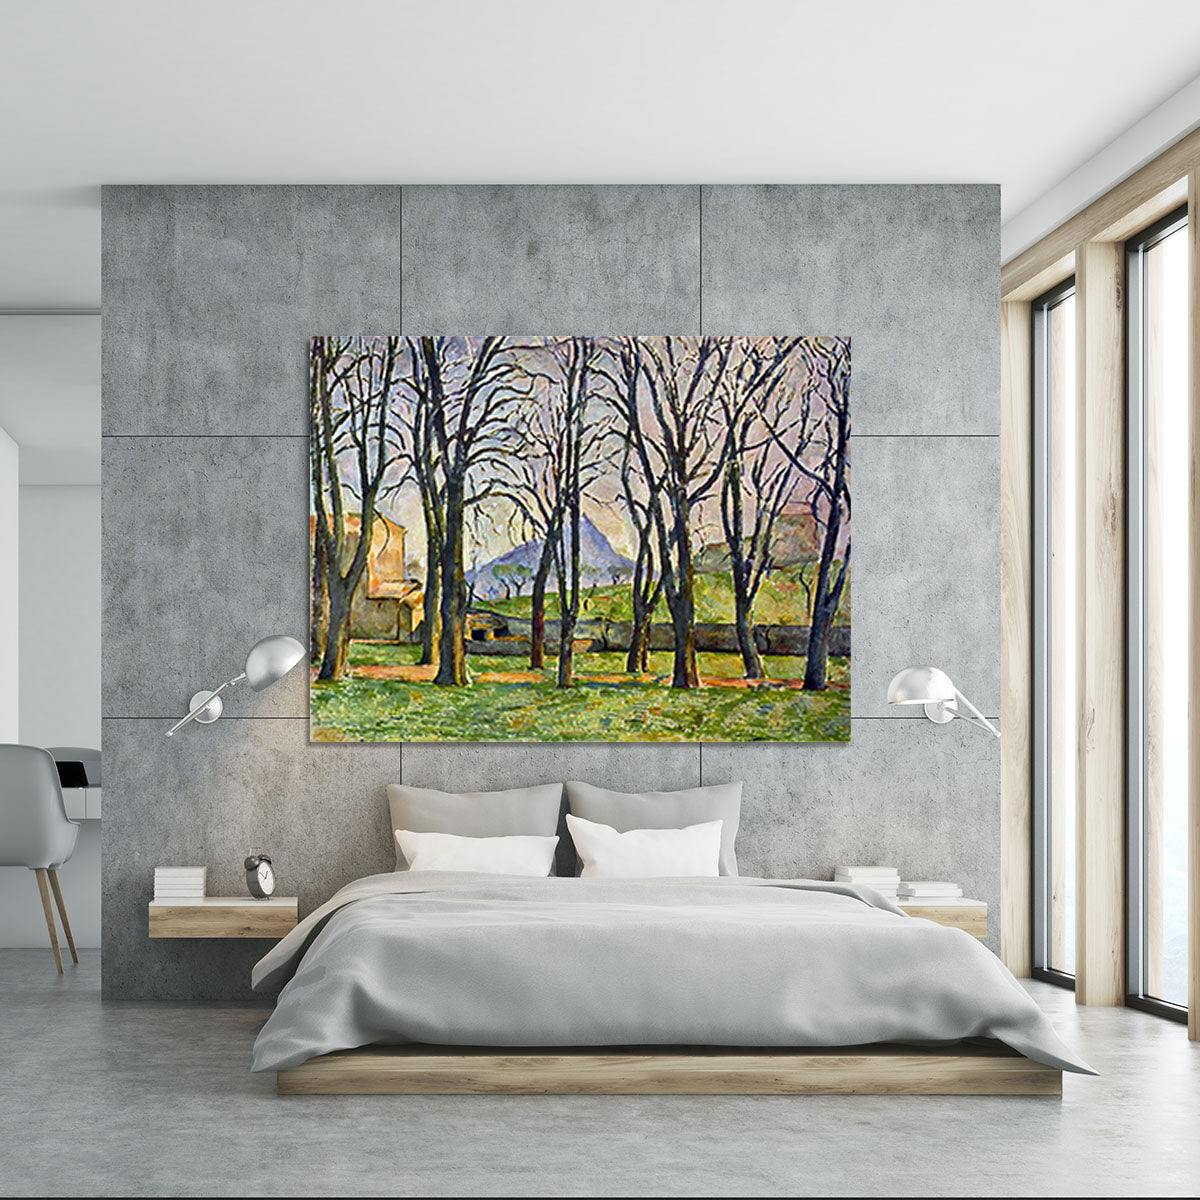 Chestnut Trees in Jas de Bouffan by Cezanne Canvas Print or Poster - Canvas Art Rocks - 5